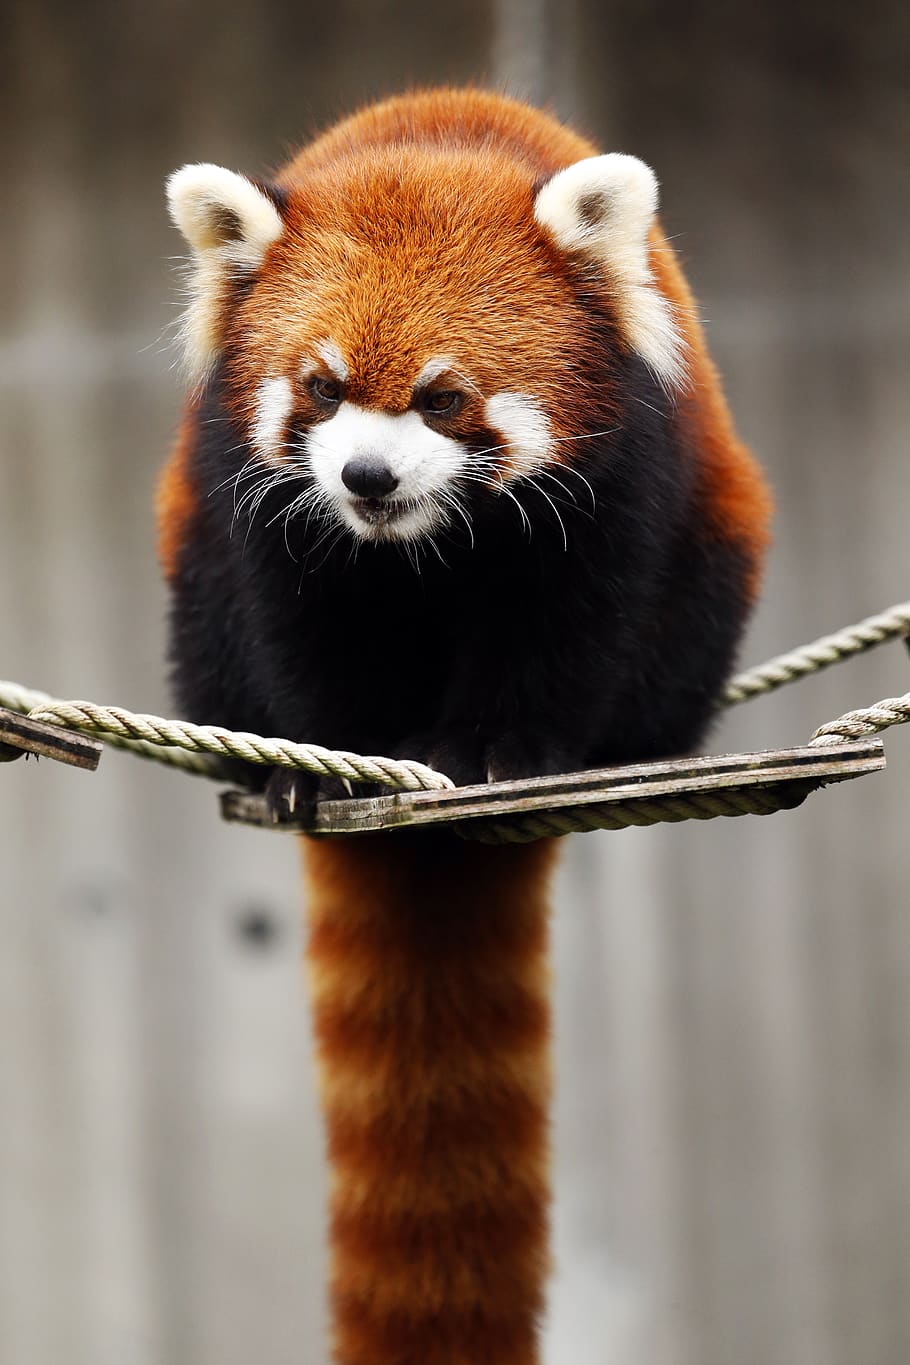 panda merah, binatang, imut, binatang buas, omnivora ・ herbivora, merah, mamalia, kebun binatang, tema binatang, hewan